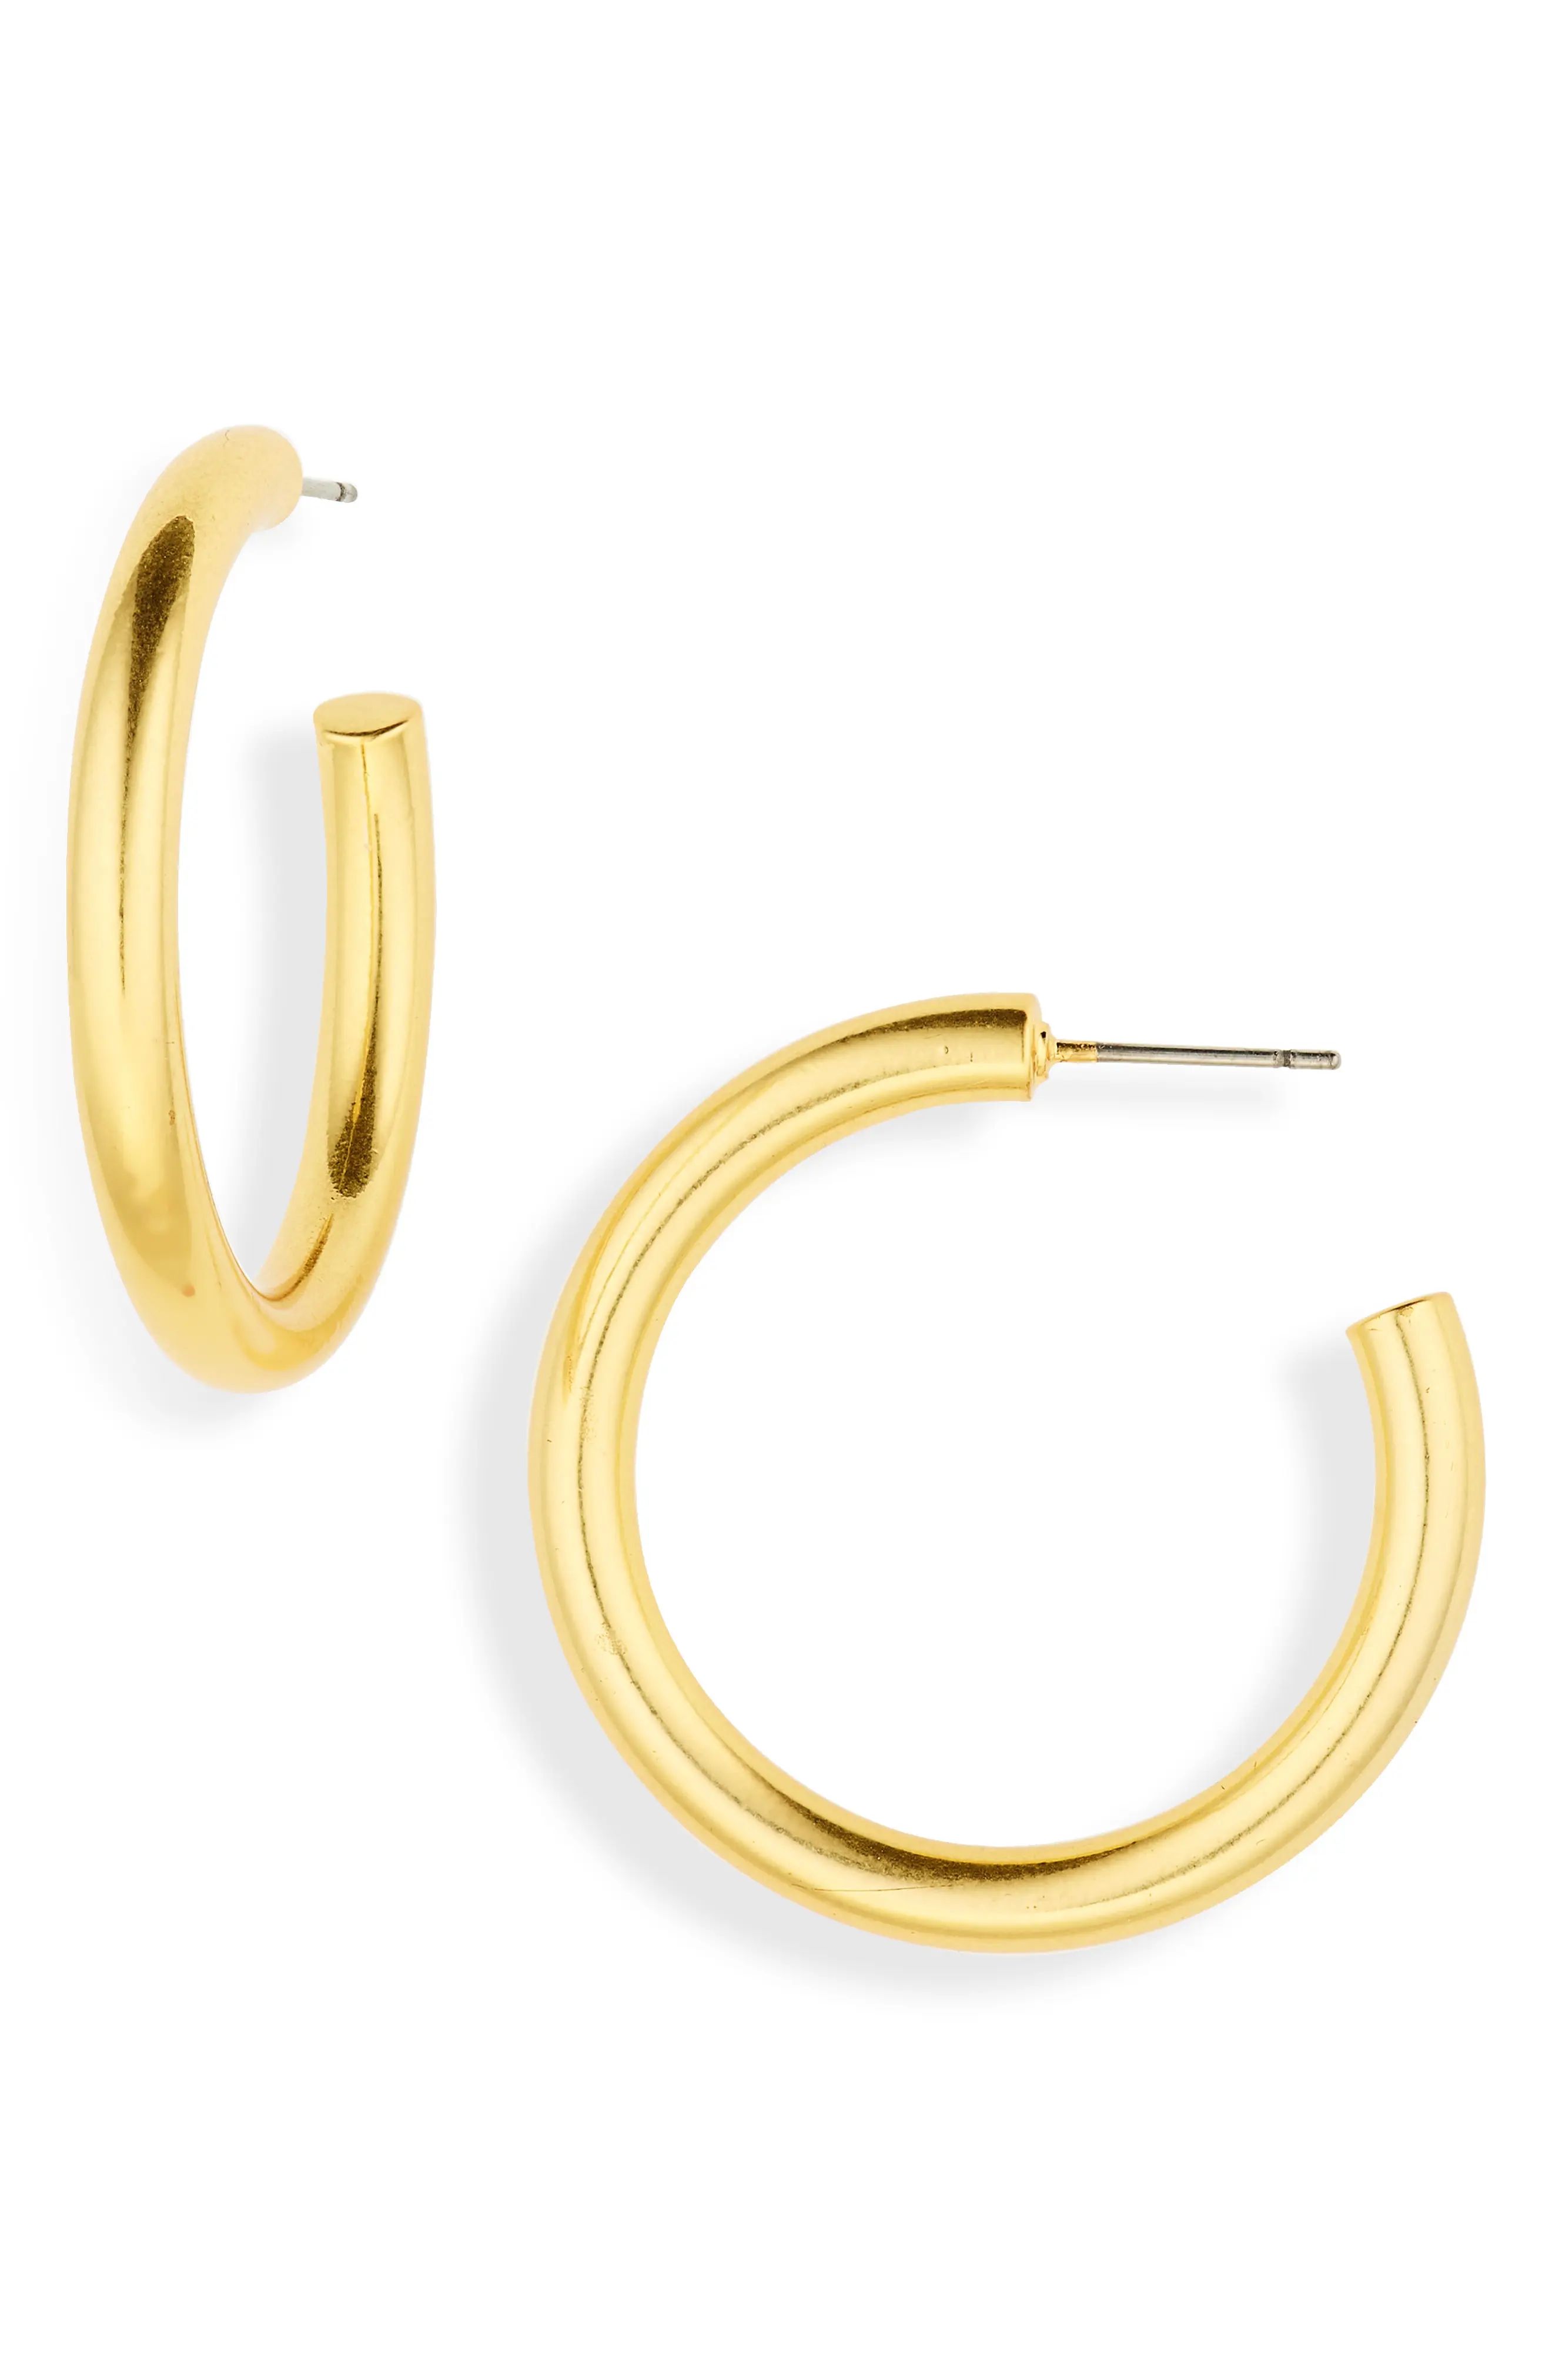 Madewell Chunky Medium Hoop Earrings in Vintage Gold at Nordstrom | Nordstrom